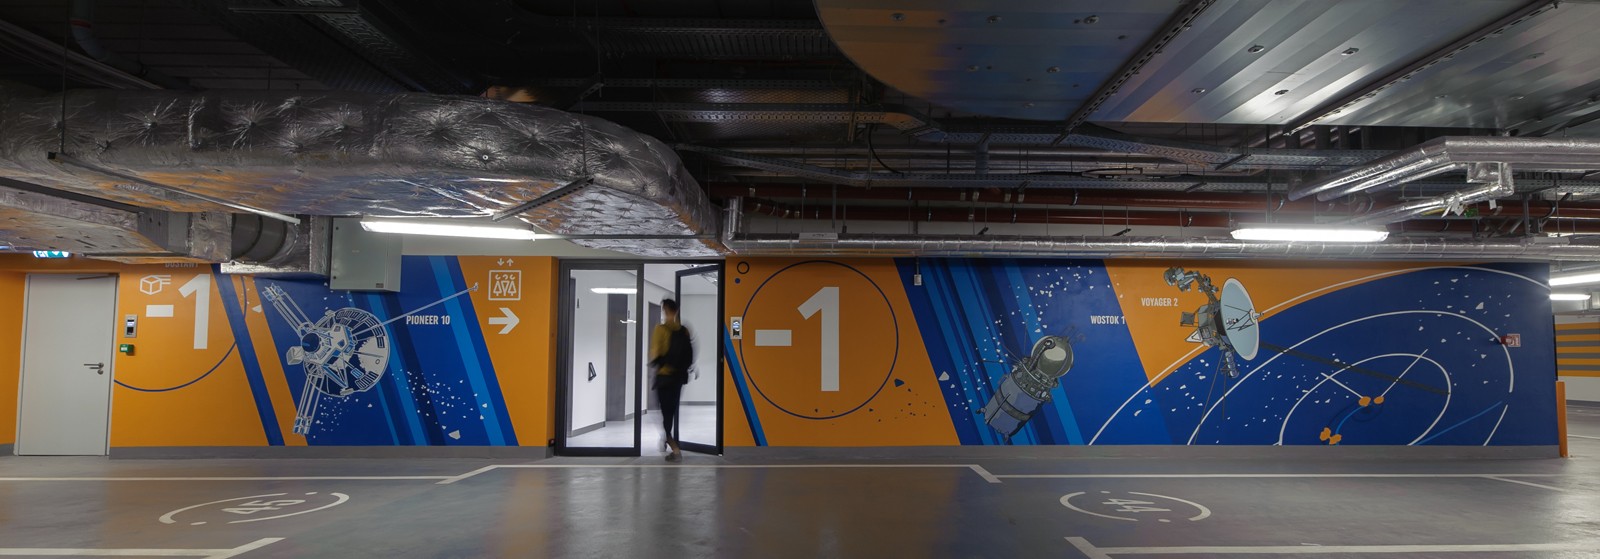 Wall Design im Warschauer Bürohaus Proximo im Stadtviertel Wola mit den gemalten Satelliten Pioneer 10, dem Raumschiff Wostok 1 und Raumsonde Voyager 2 | PROXIMO | Portfolio